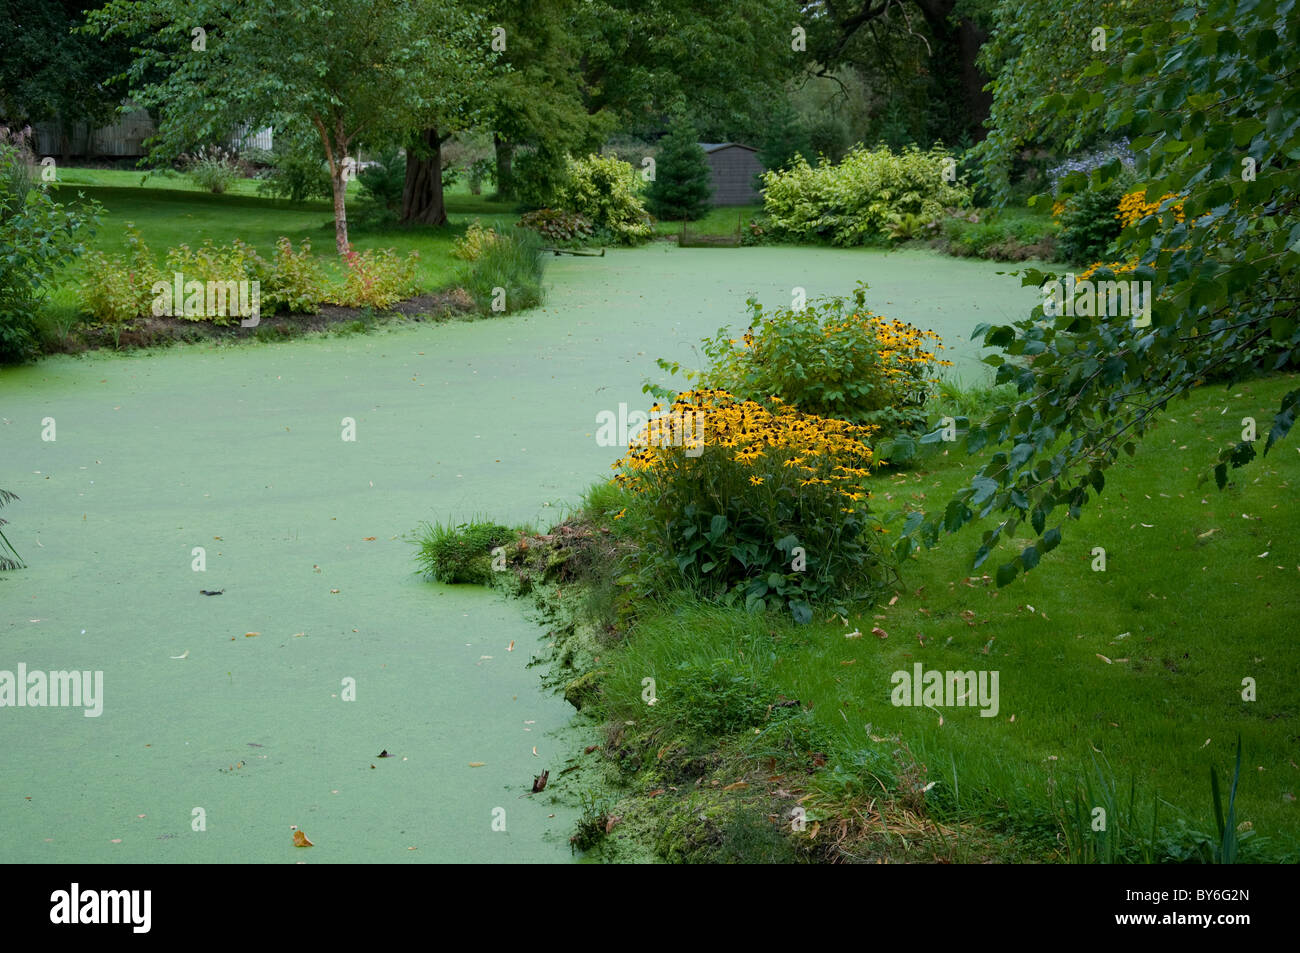 Algae-covered pond at Bressingham Gardens in Norfolk, England. Stock Photo